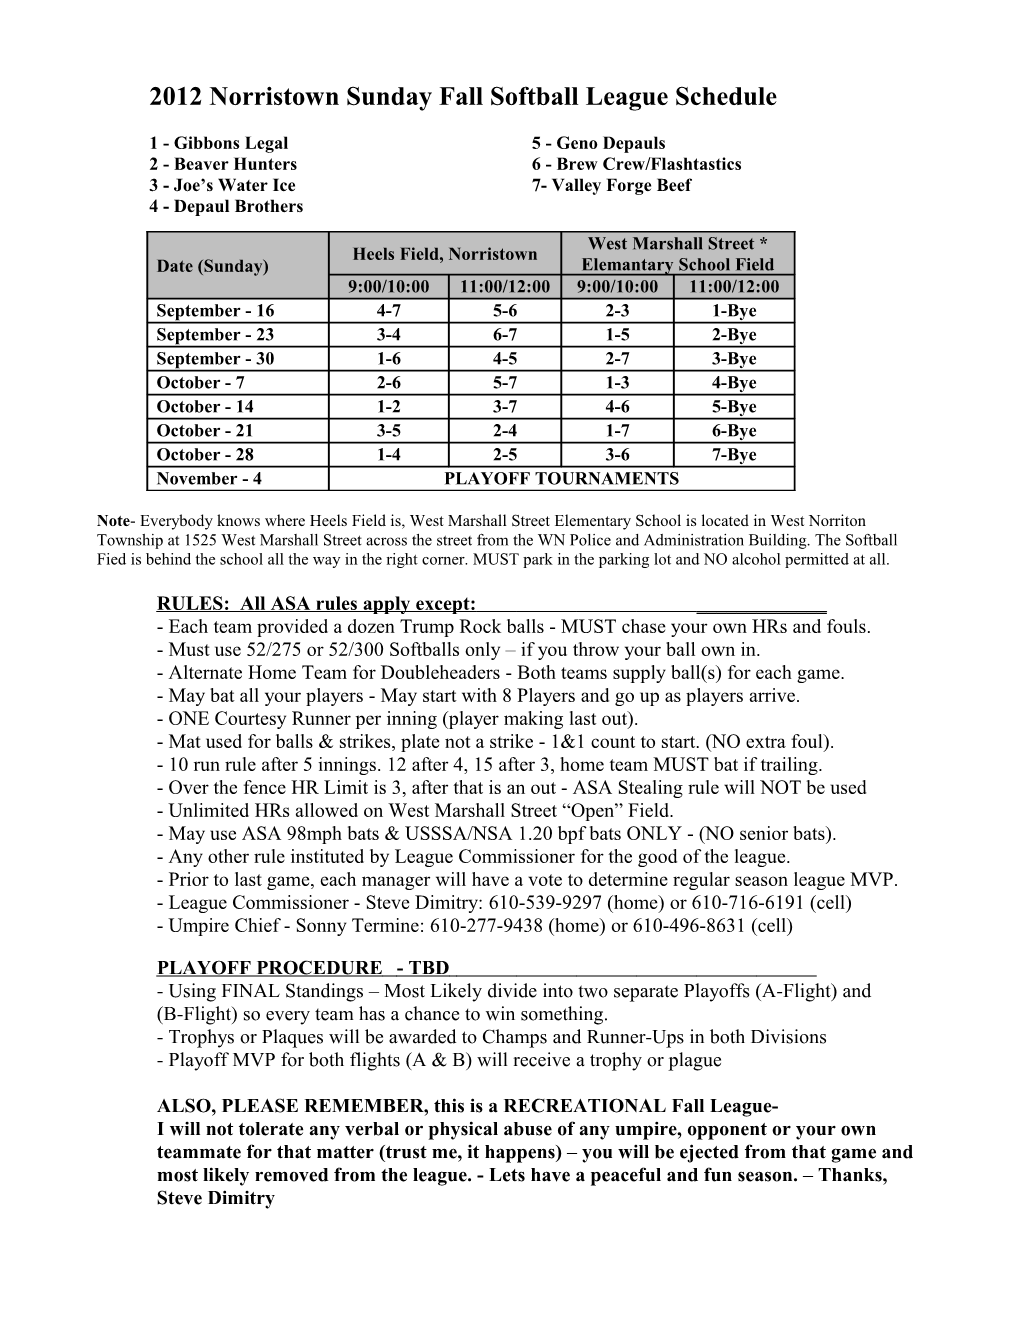 1998 Norristown Softball Schedule